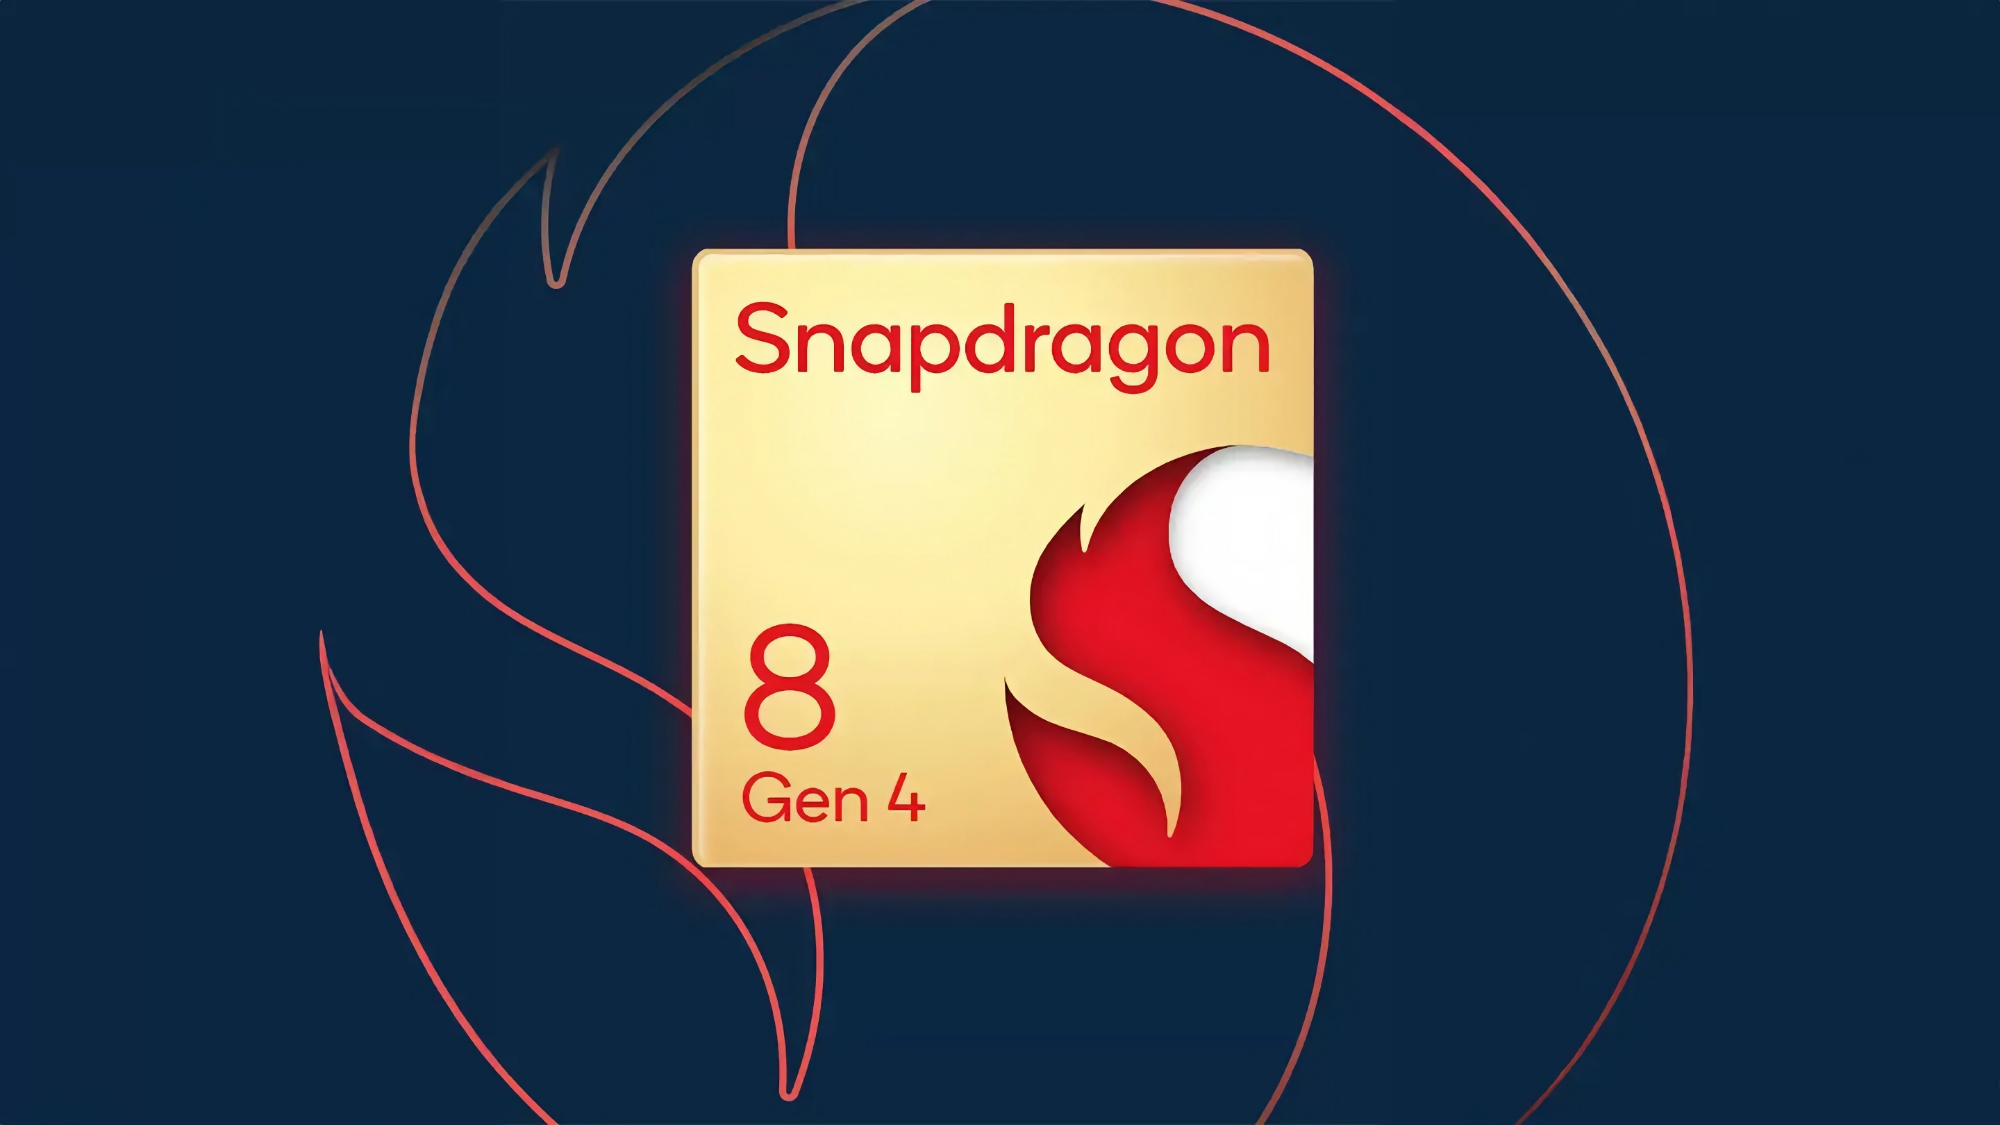 Uma fonte revelou quando o primeiro smartphone com chip Snapdragon 8 Gen 4 será lançado